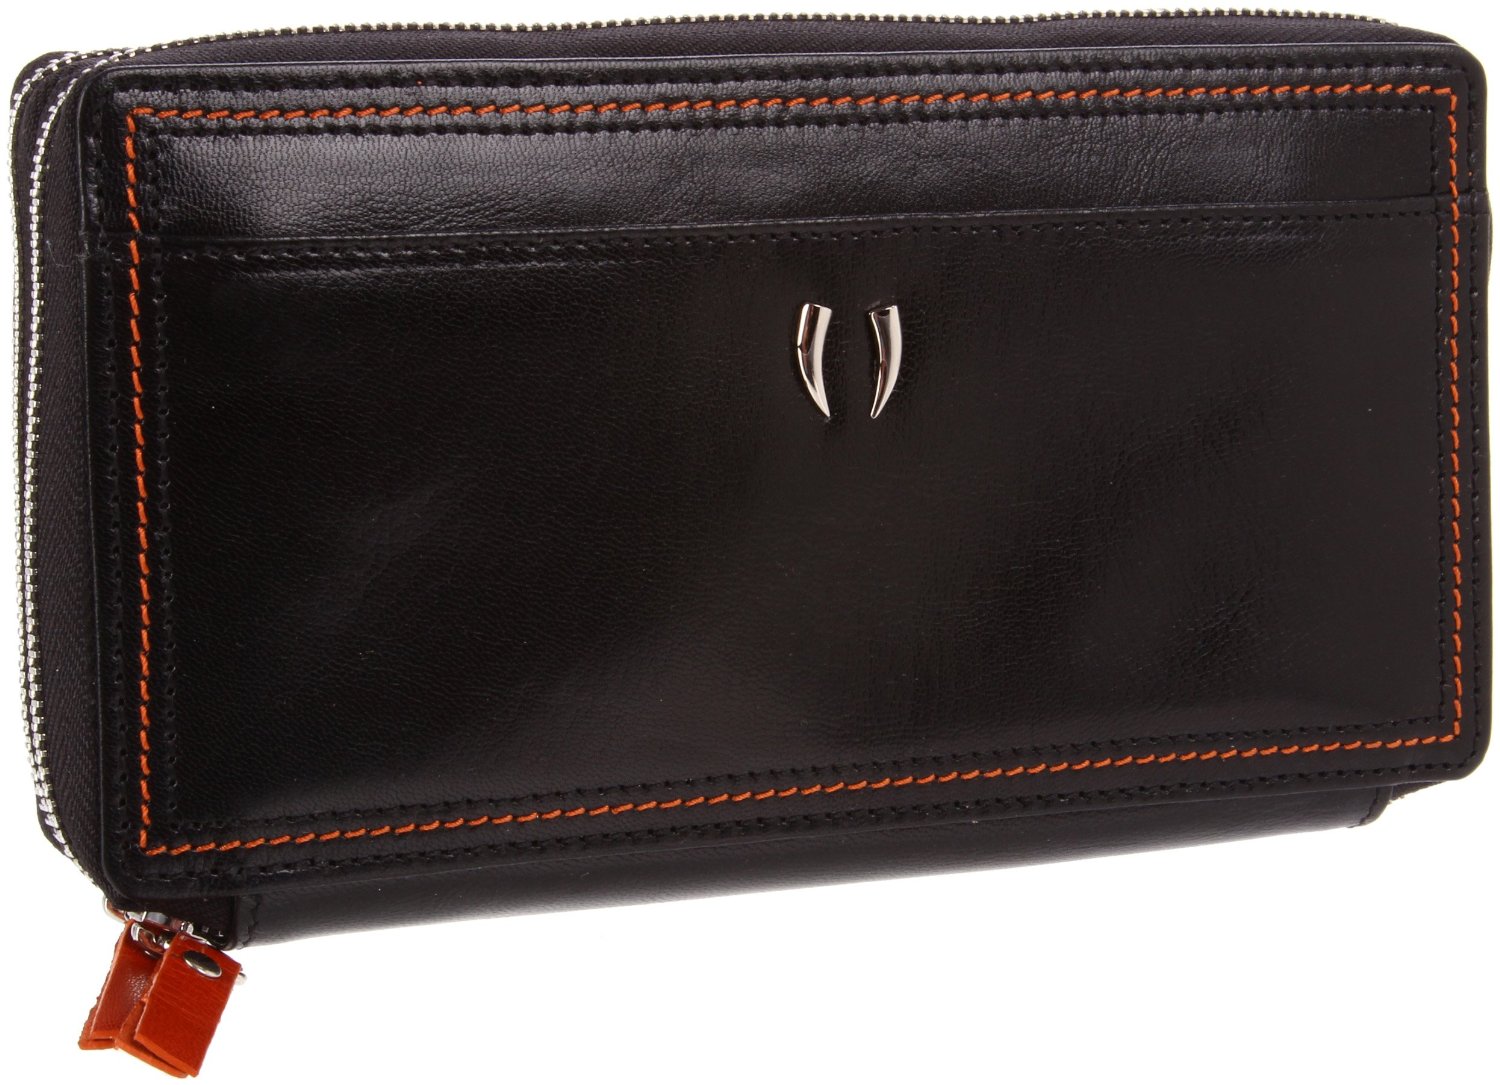 Tusk Capri Double Zip Checkbook Wallet in Black (black/orange) | Lyst